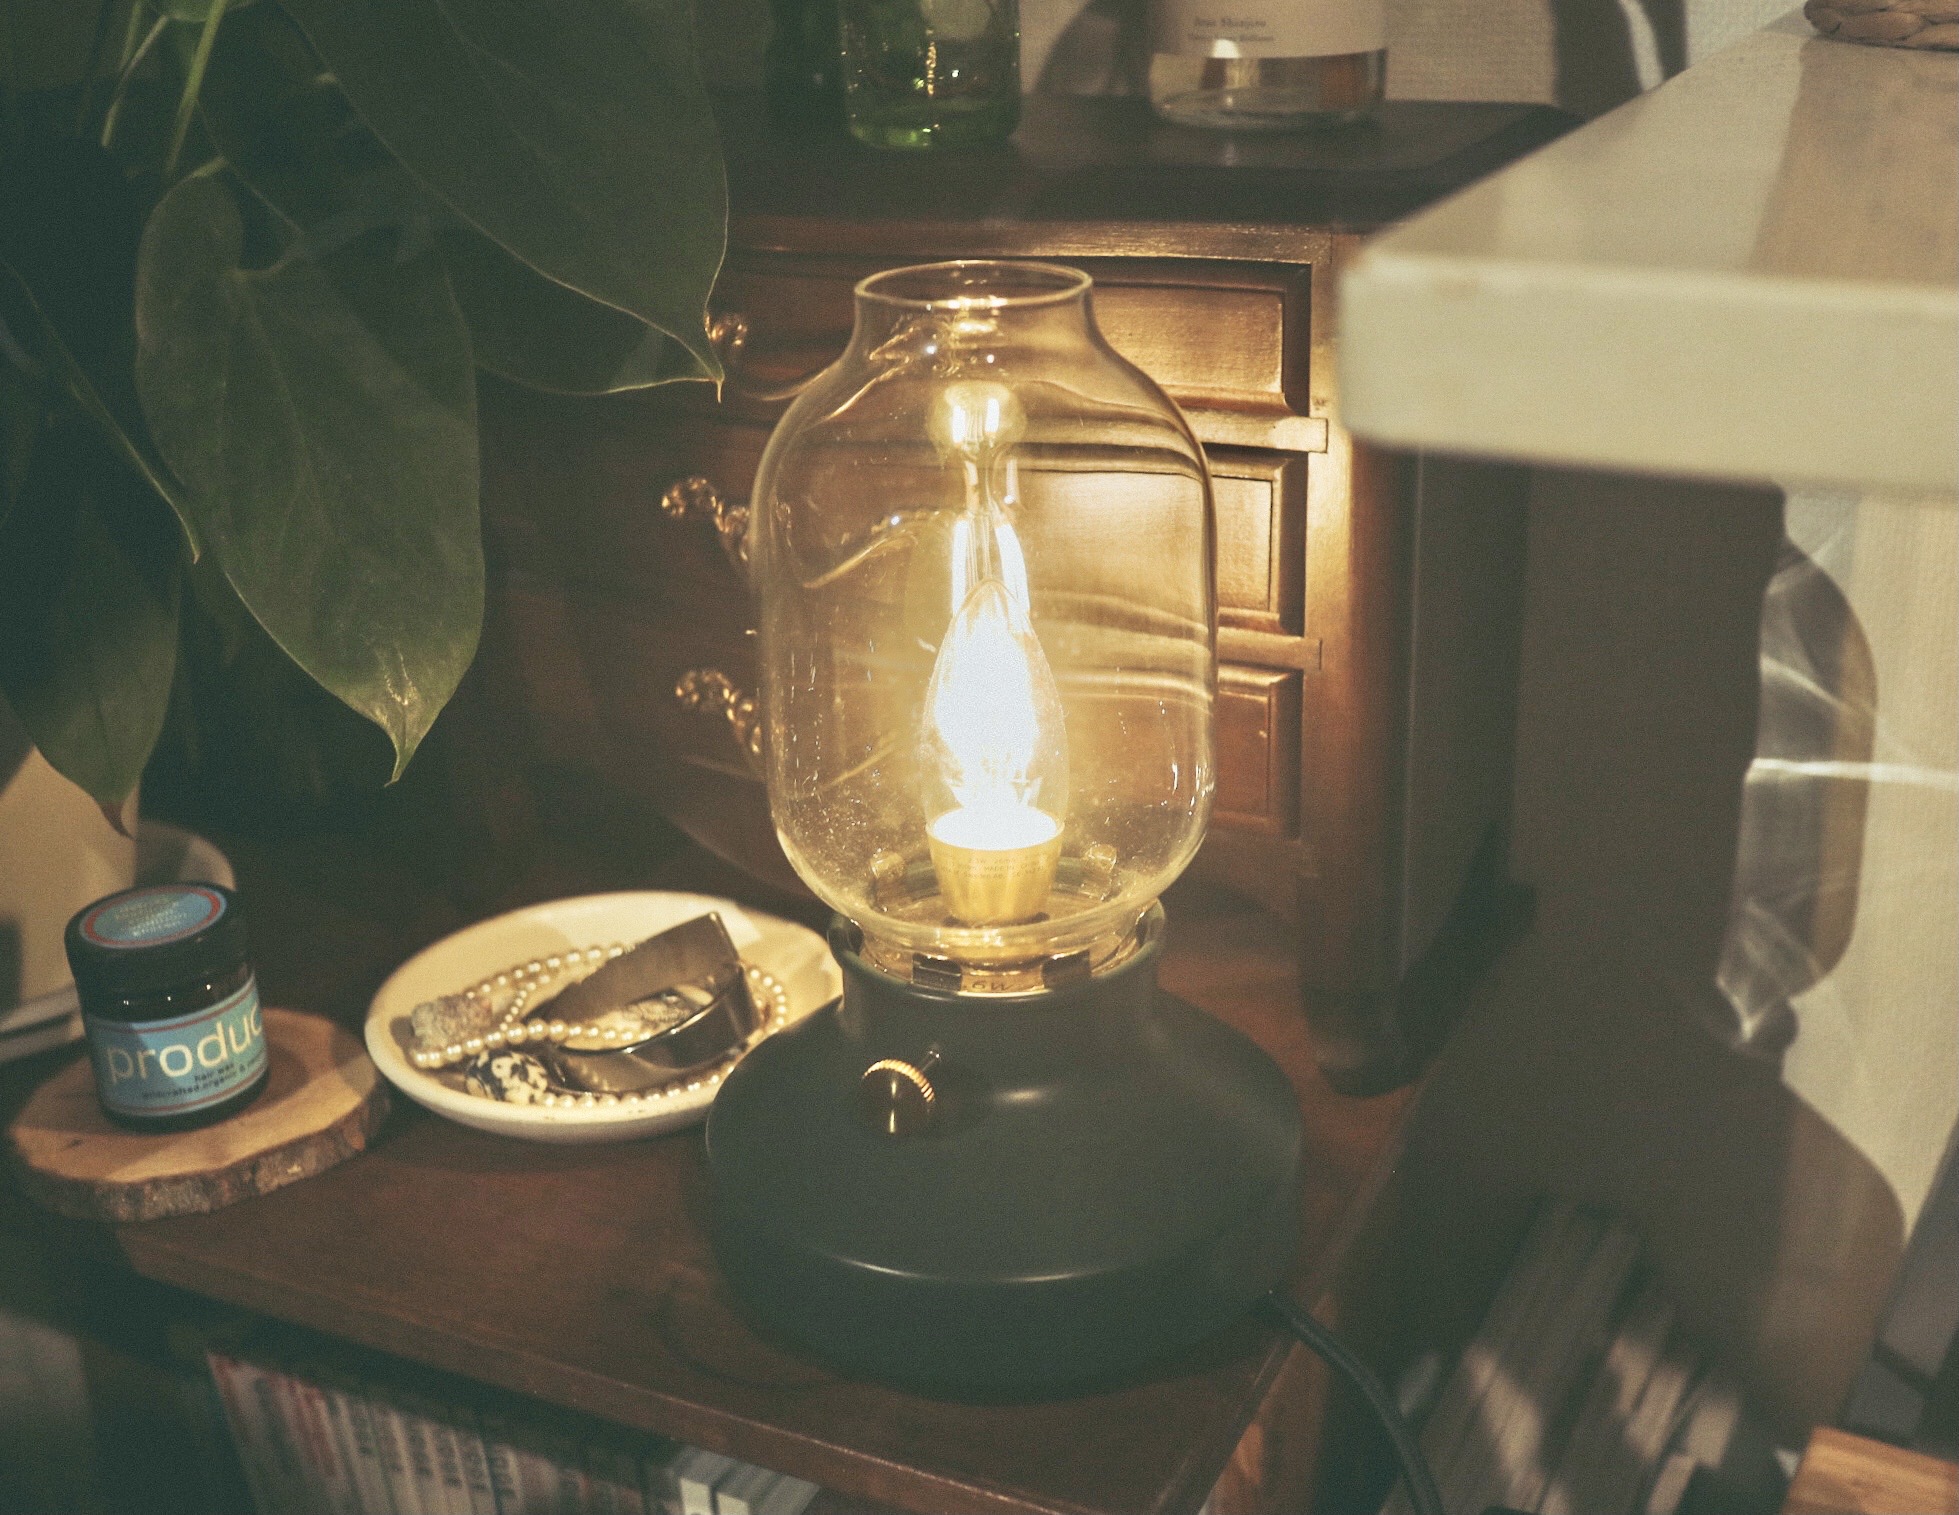 トラディショナルな灯油ランプを模したランプは、つまみで明るさ調整が可能。作業時のメインライトから夜のリラックスタイムまで、幅広いシーンに活躍してくれそうです。3,000円ほどと、気軽に取り入れられるお値段にも驚き。(このお部屋を見る)